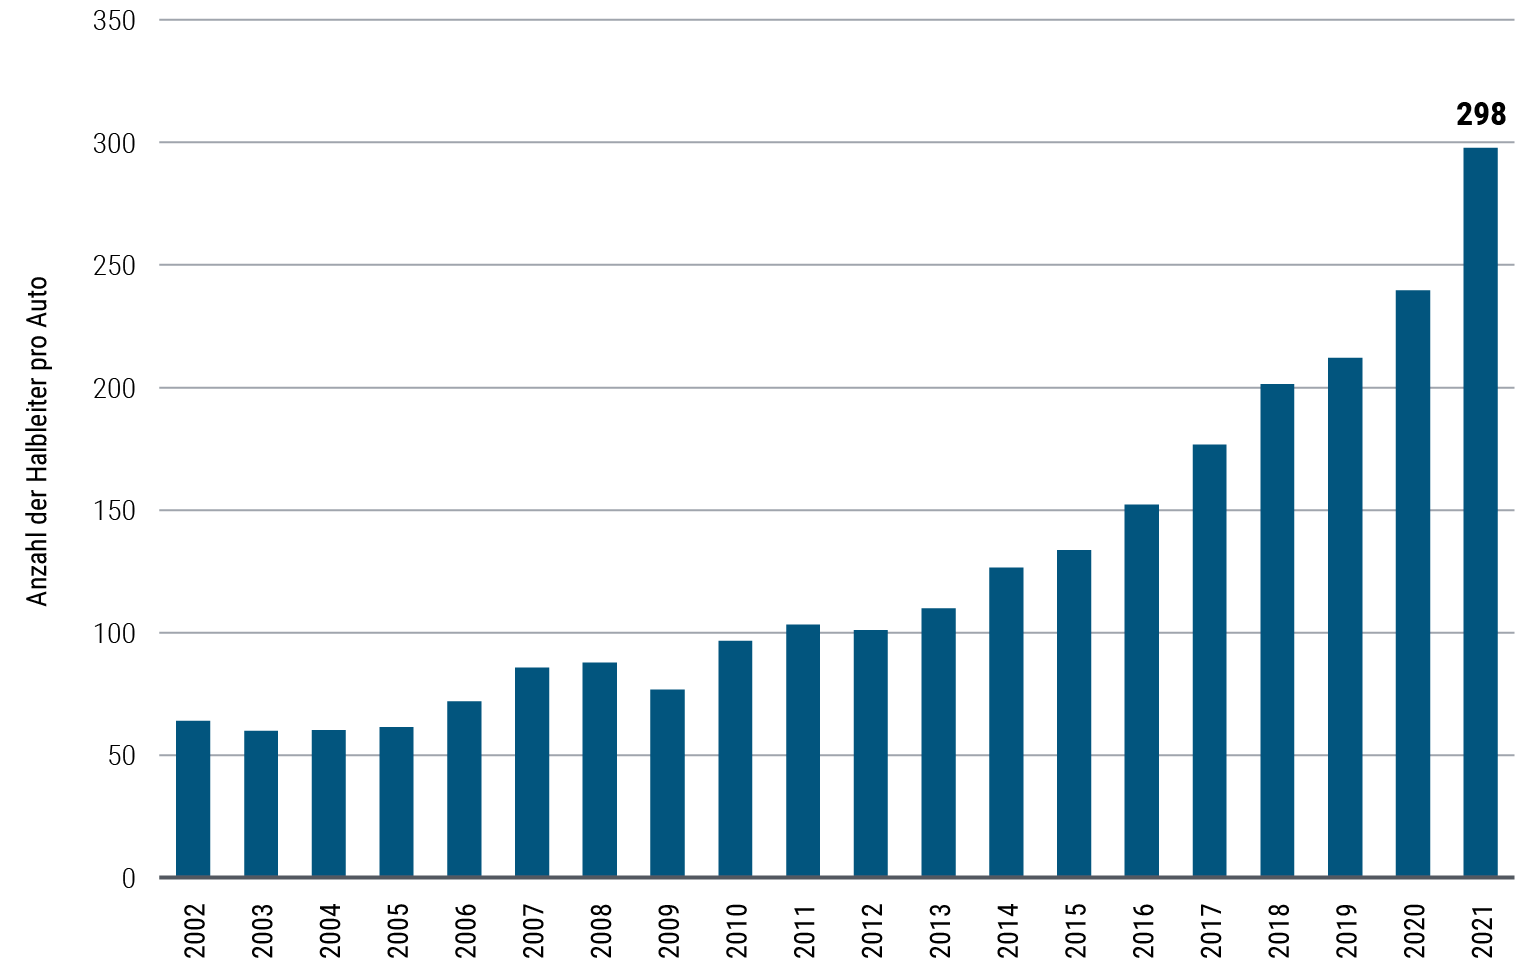 Abbildung 2 ist ein Balkendiagramm, das die durchschnittliche jährliche Anzahl von Kfz-Halbleitern pro Fahrzeug von 2002 bis 2021 darstellt. In diesem Zeitraum ist die Zahl von 64 auf 298 gestiegen, wobei der größte Anstieg im Einjahresvergleich zwischen 2020 und 2021 zu verzeichnen war. Die Einheiten zeigen die weltweiten Lieferungen von Mikroprozessoren und analogen Halbleitern für die Automobilindustrie, geteilt durch die weltweite Produktion von Leichtfahrzeugen. Die Daten für 2021 spiegeln die ersten drei Quartale auf Jahresbasis wider.